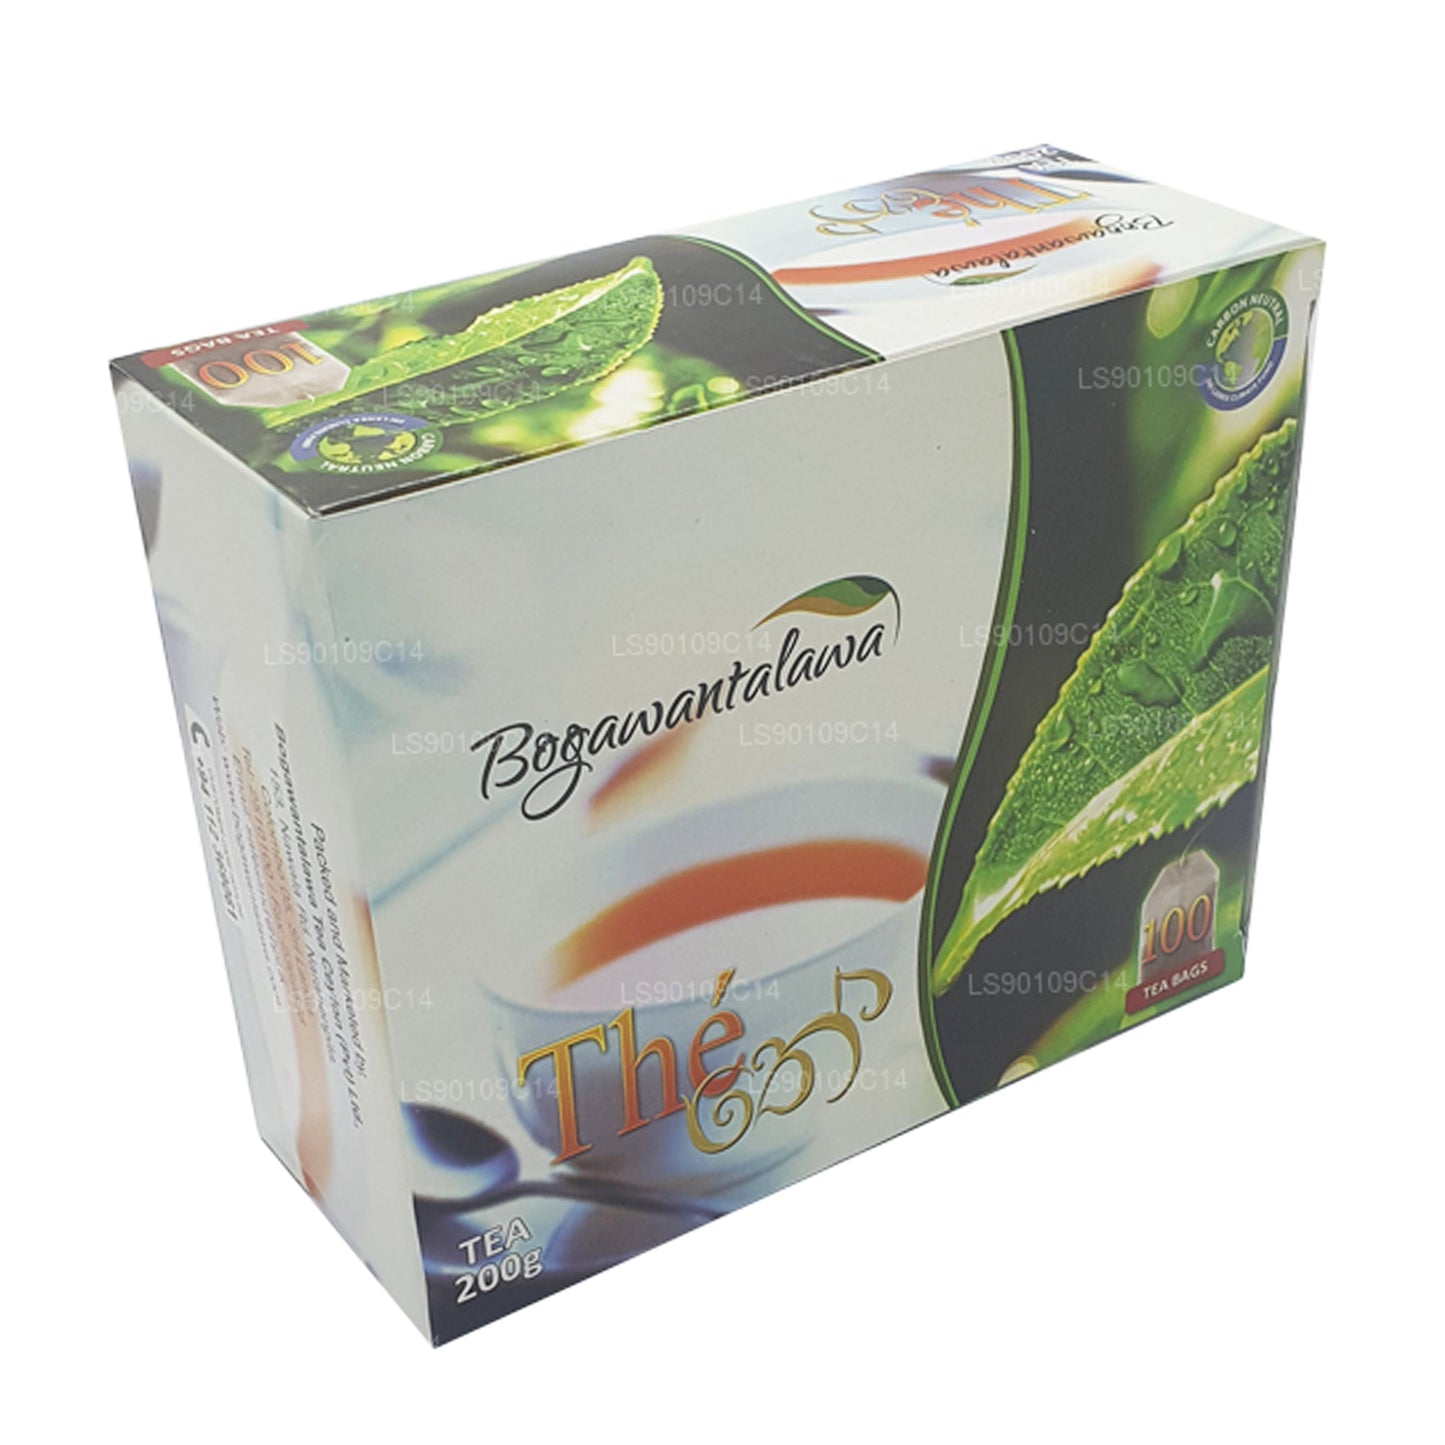 Té Bogawantalawa (200 g) 100 bolsitas de té